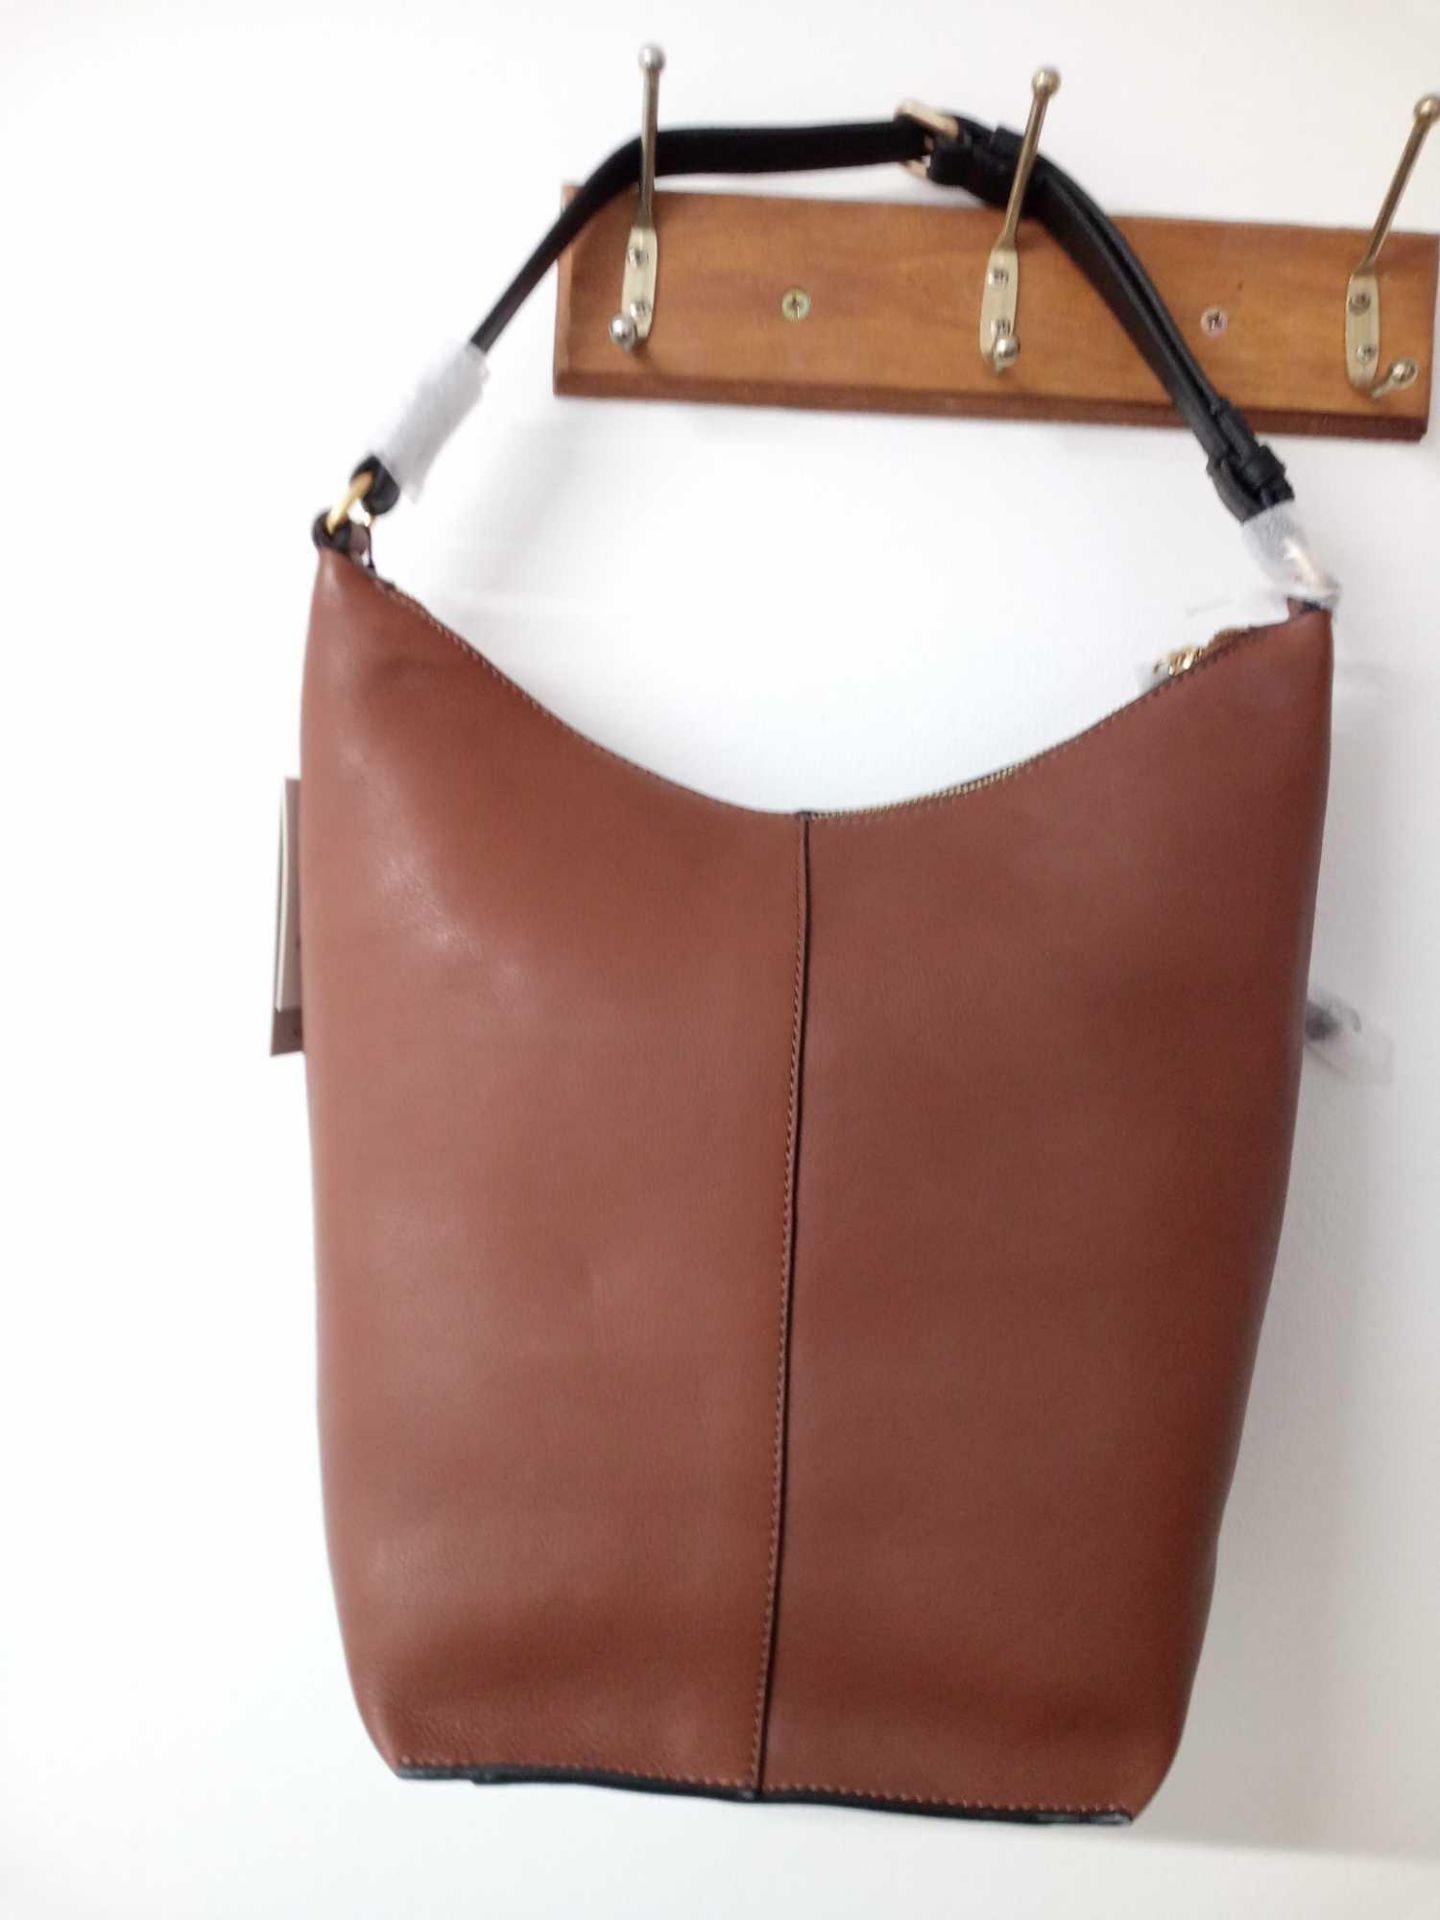 RRP £109 John Lewis & Partners Tan Zip Hobo Tan Leather Bag (1494366) - Image 2 of 2